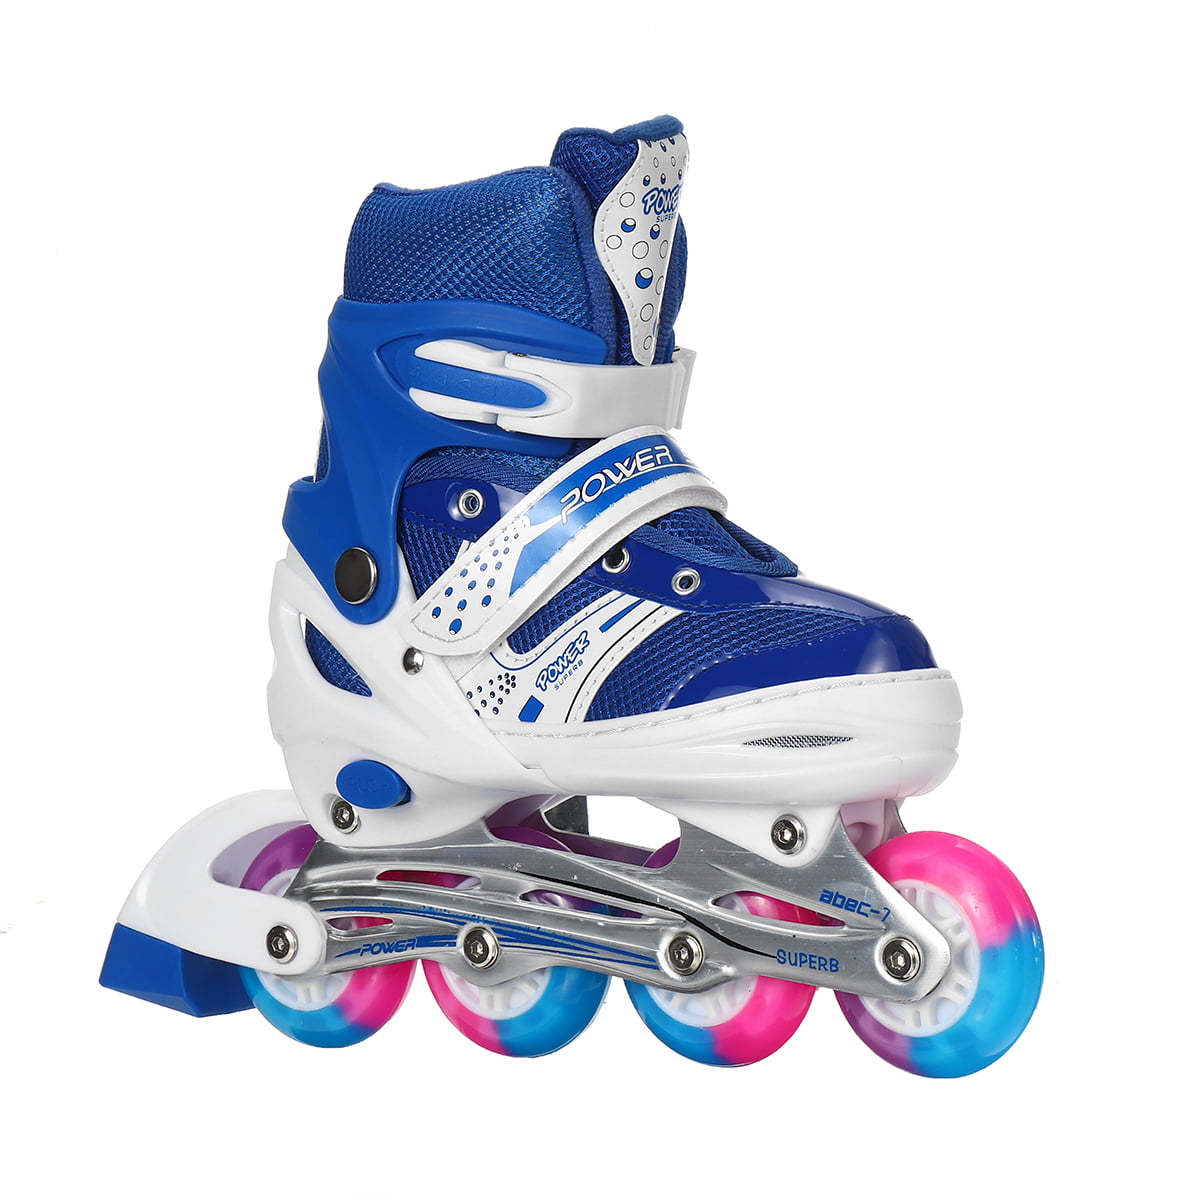 Roller Skates for Kids ~Adjustable Light Up Skates for Girls Boy Christmas Gift\ 